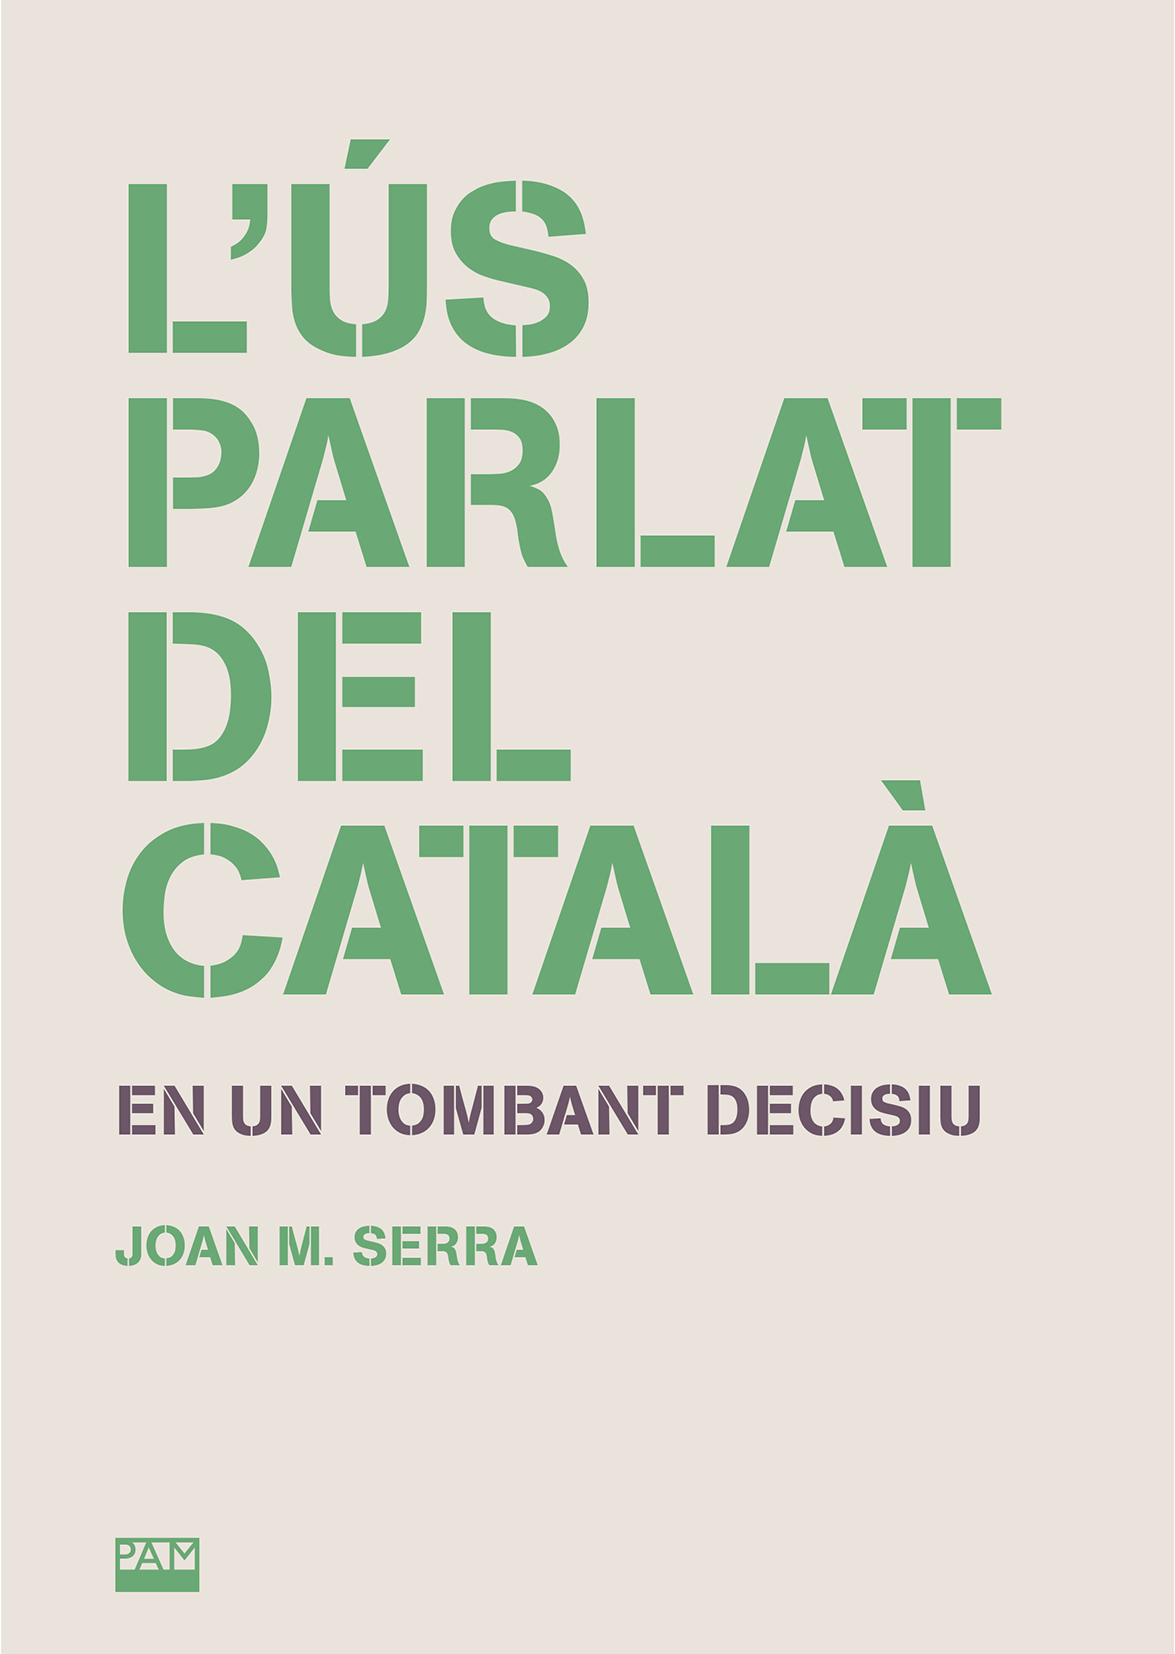 L’ús parlat del català